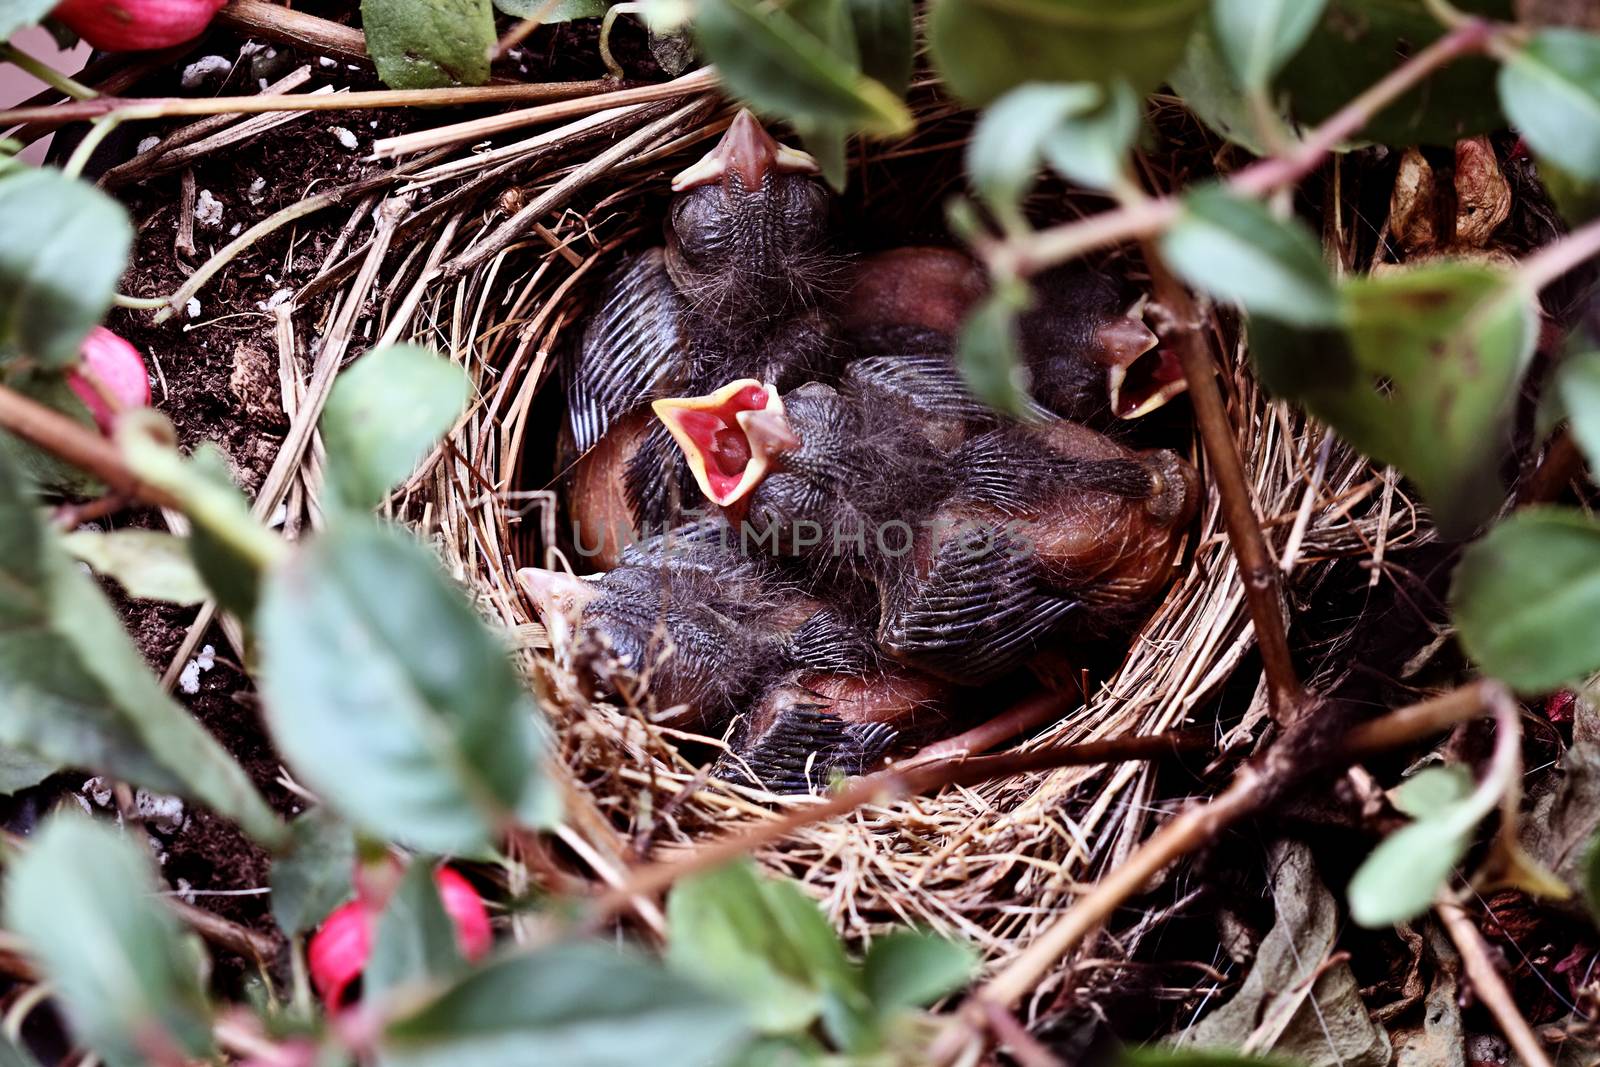 Baby Birds in a Nest by StephanieFrey